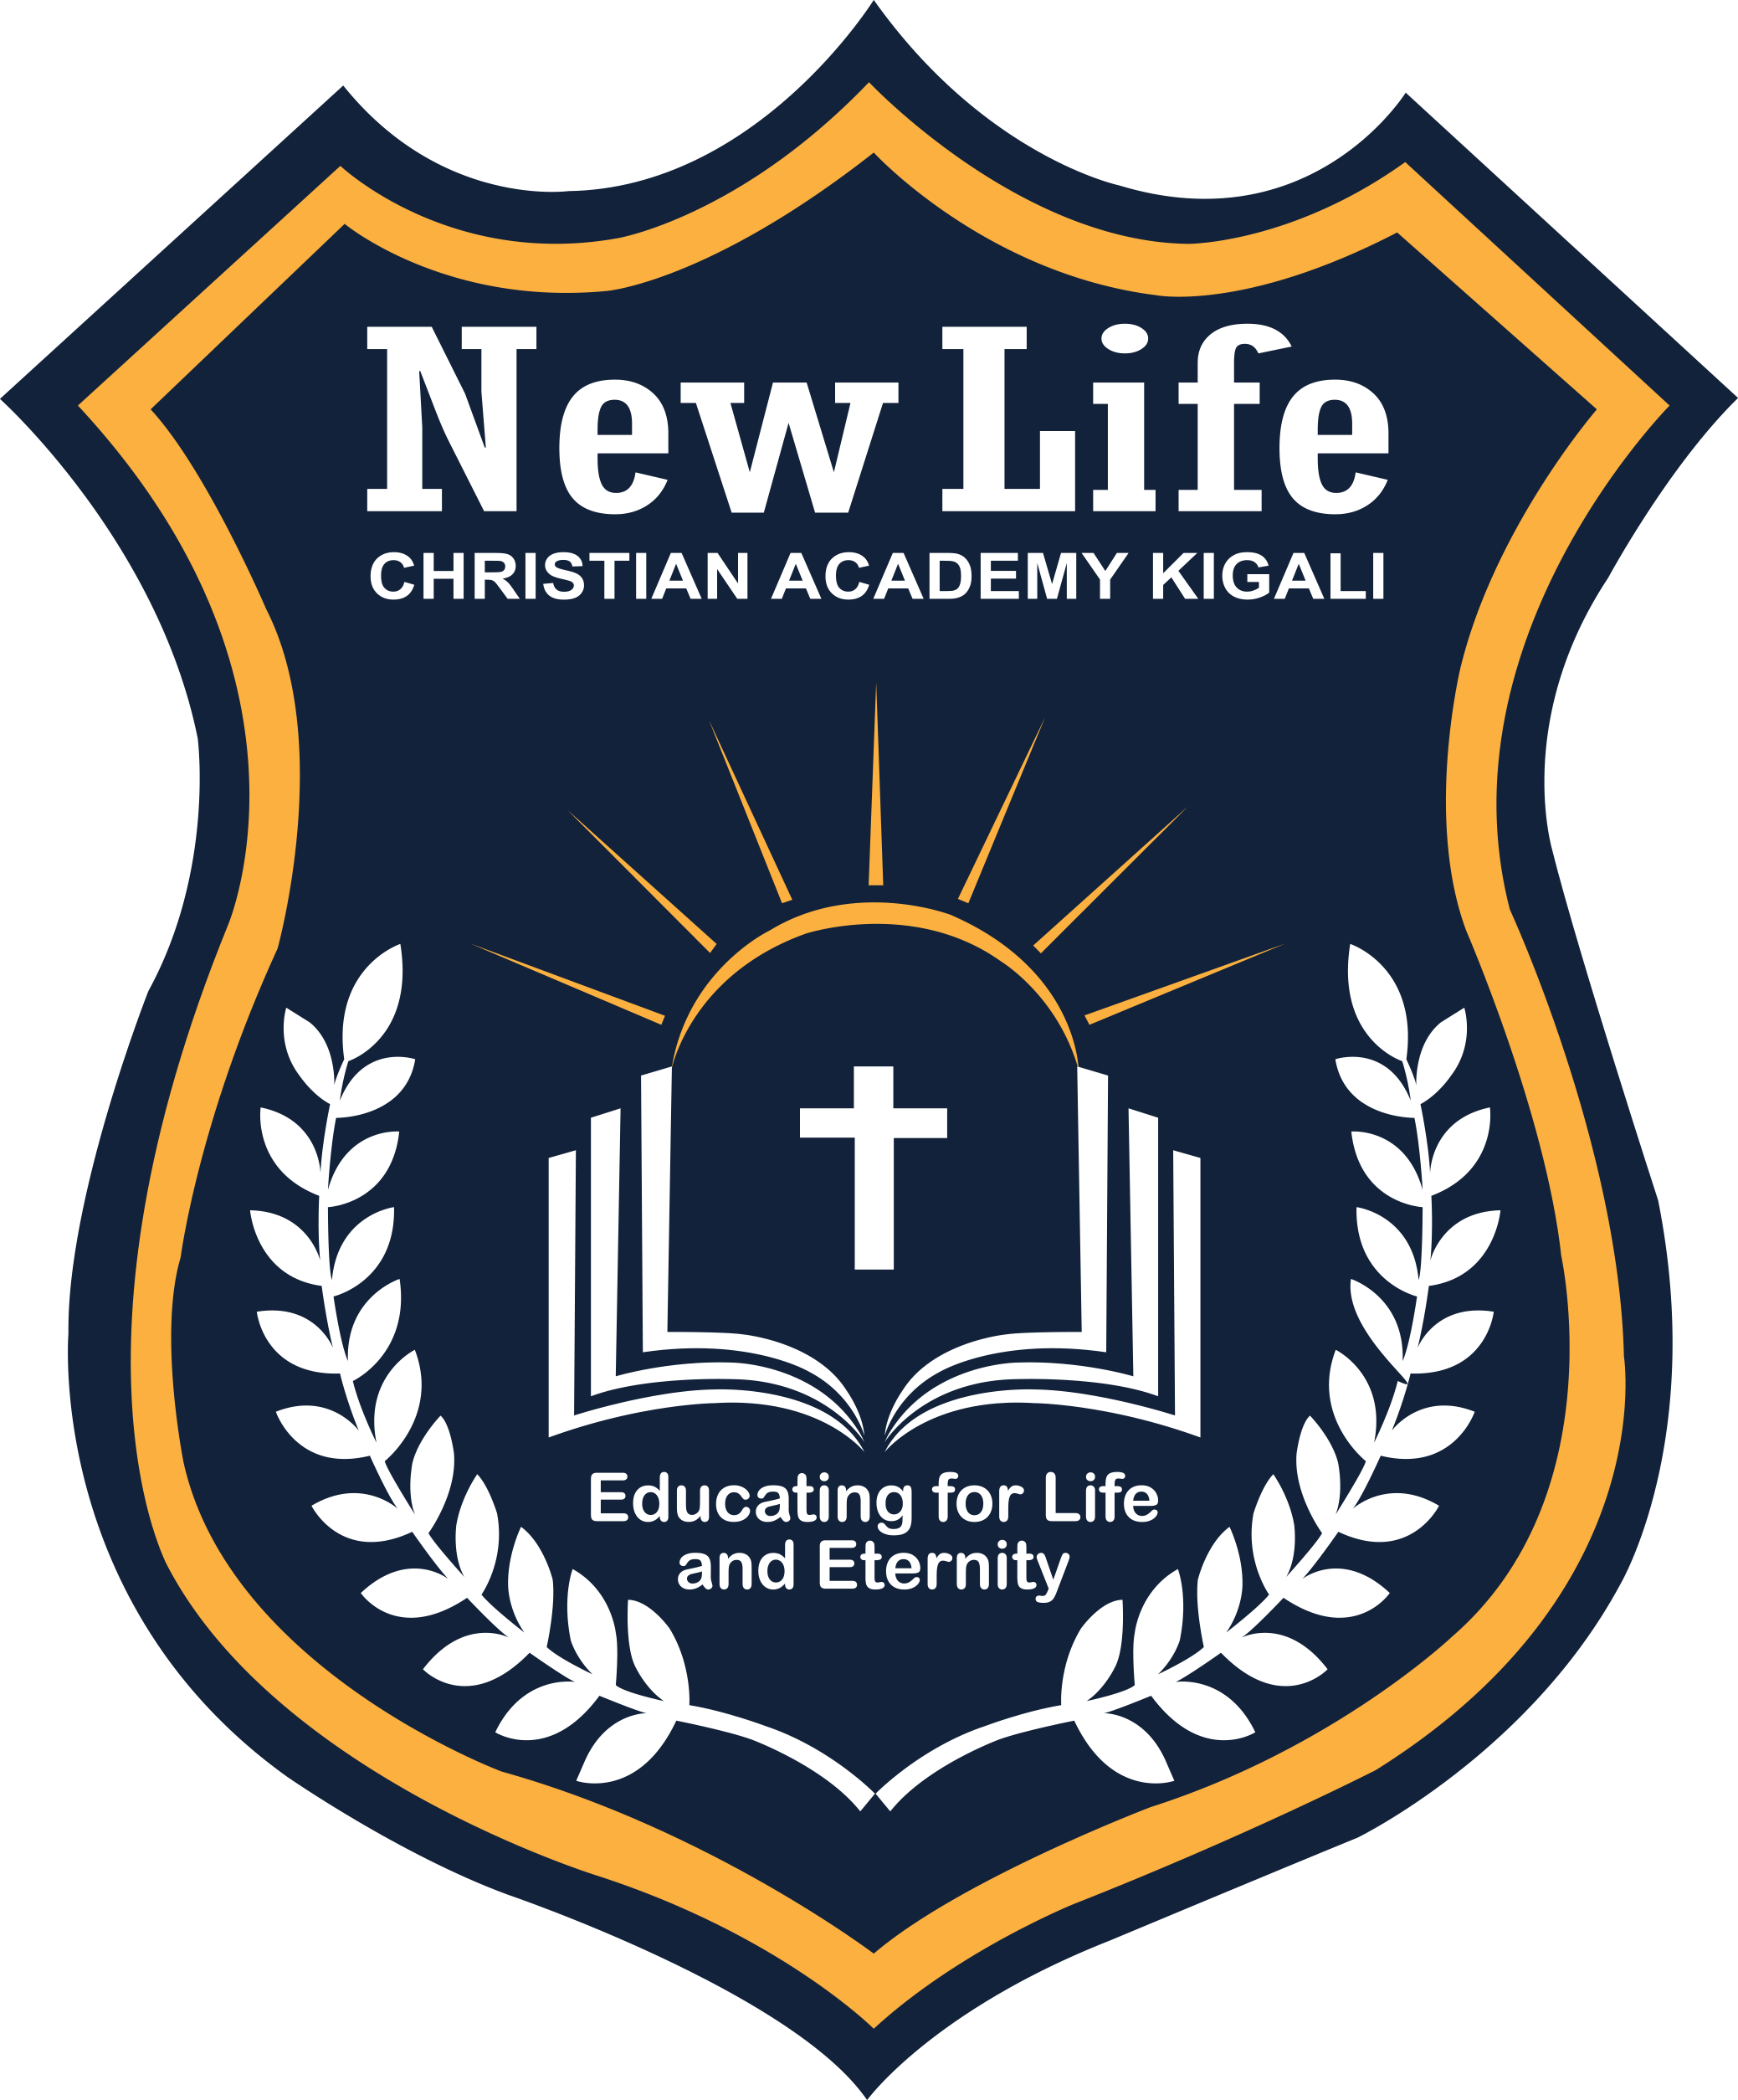 New Life Christian Academy Kigali